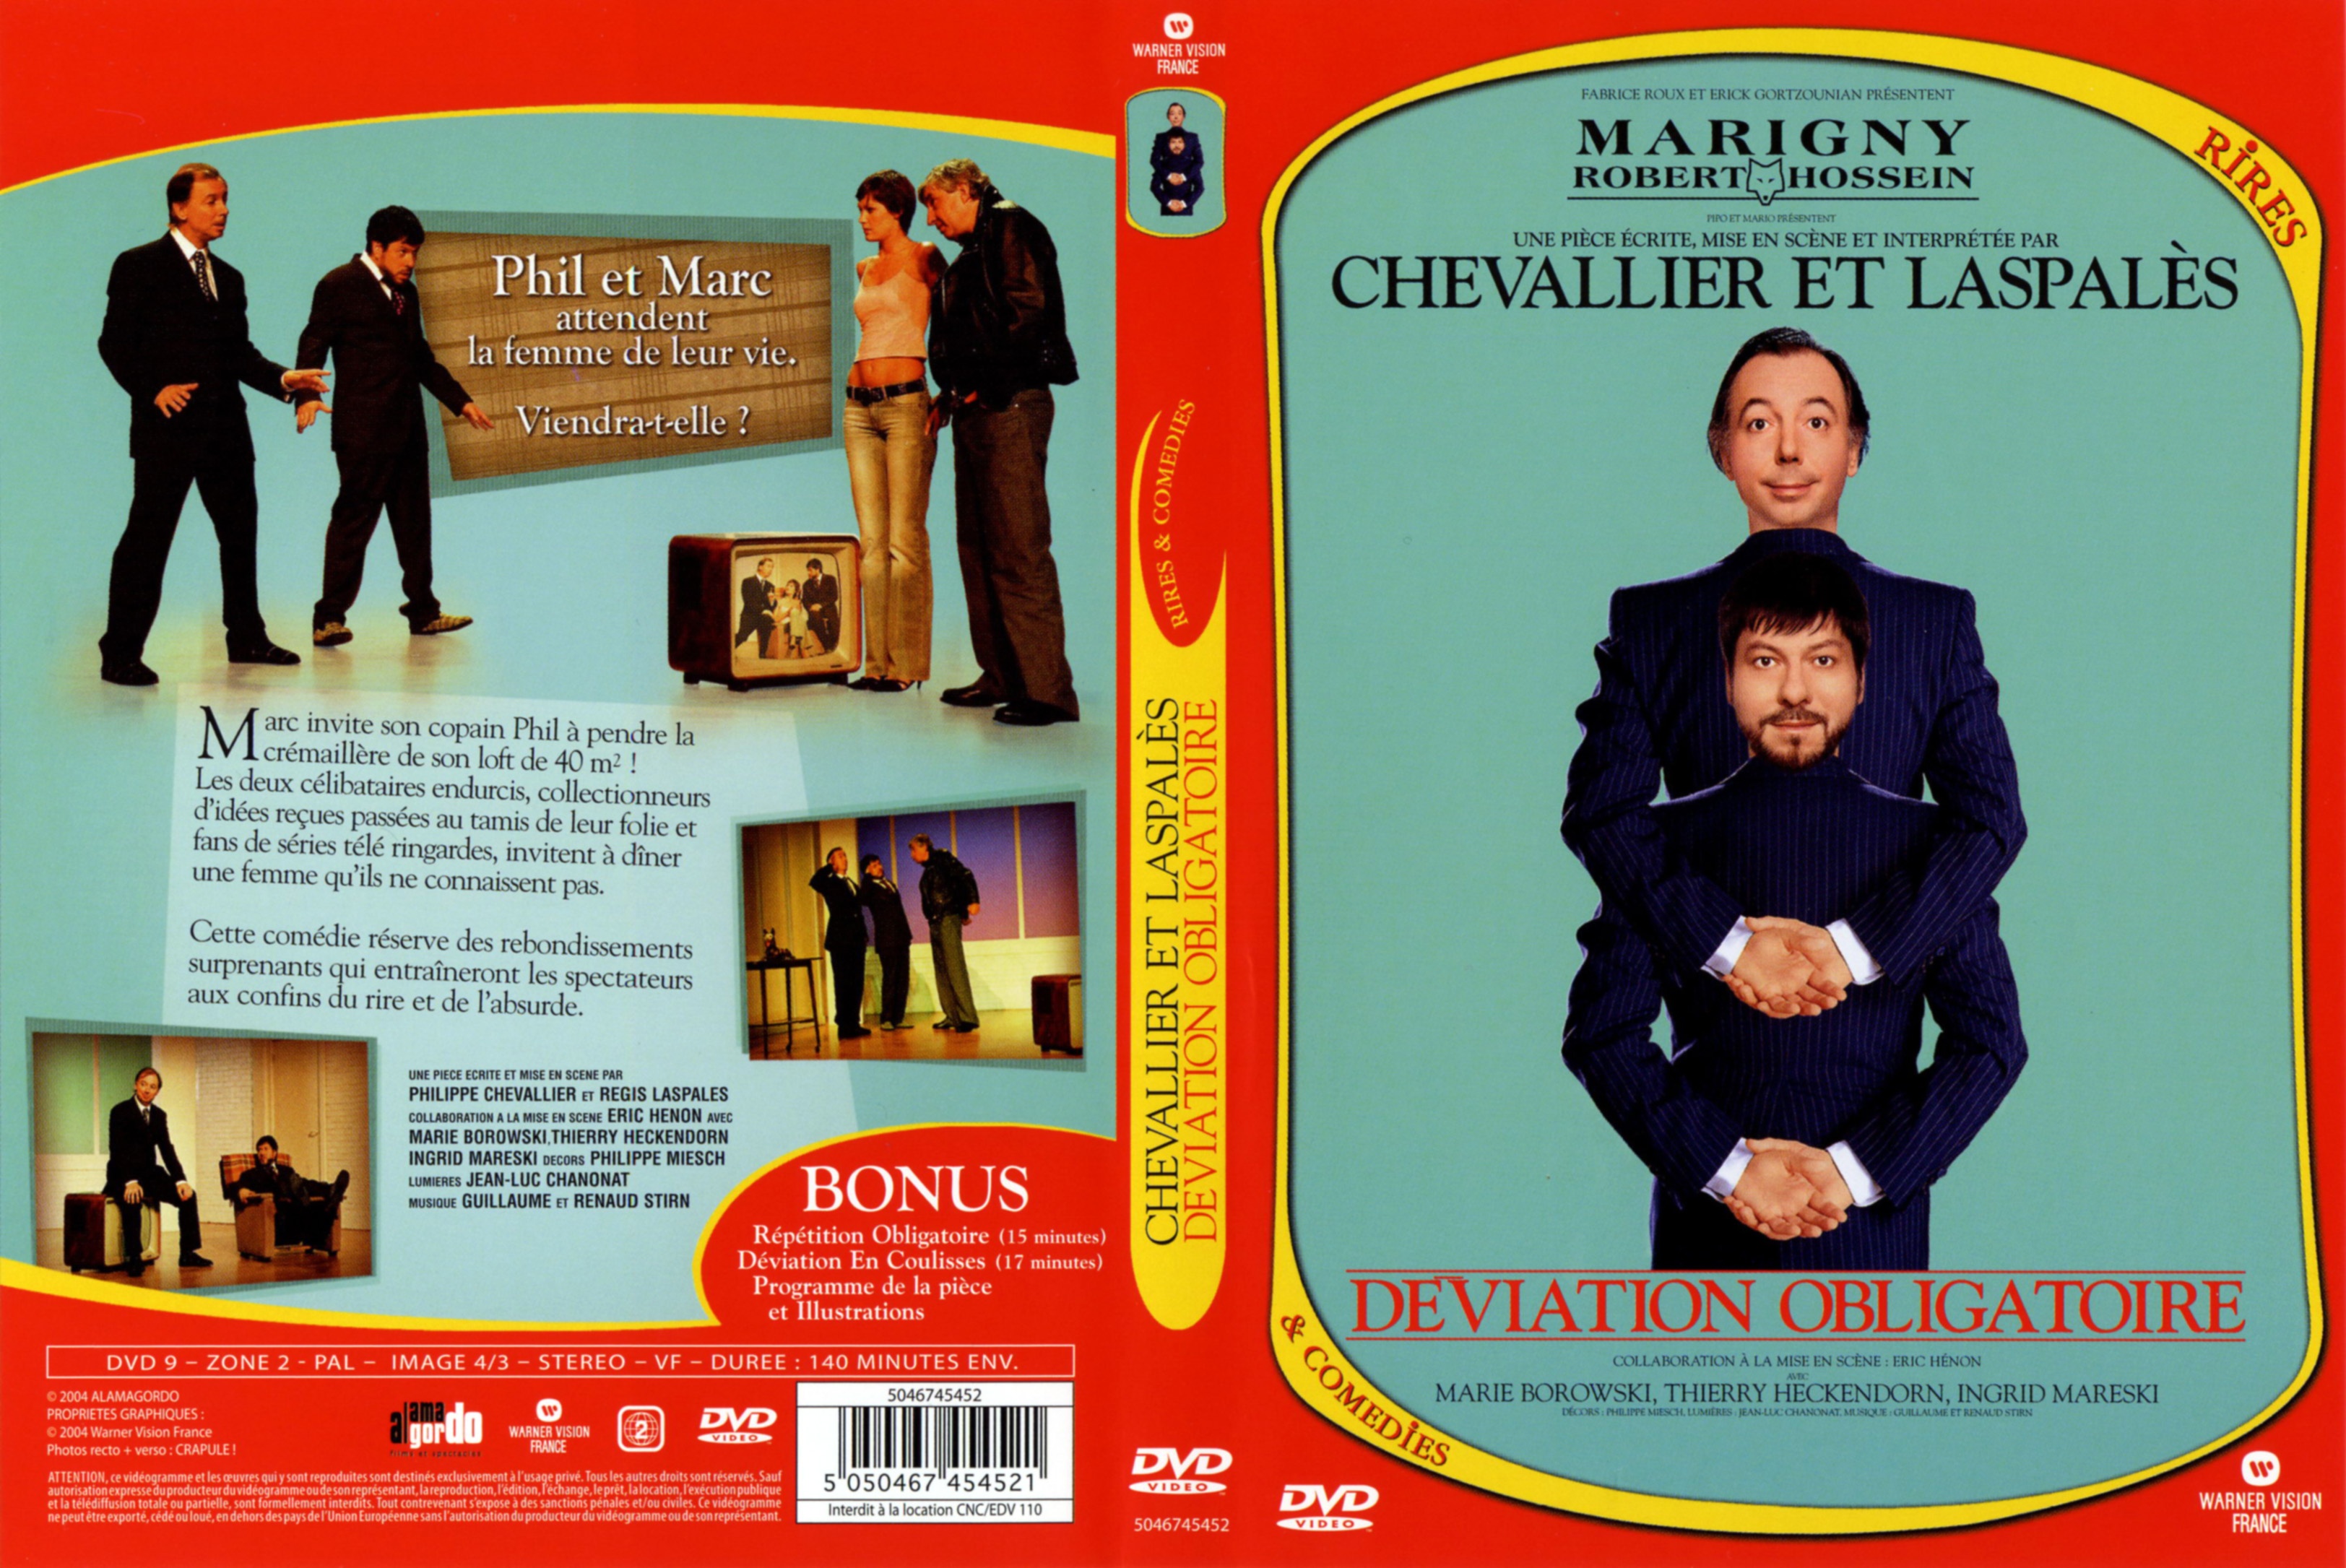 Jaquette DVD Chevalier et laspales deviation obligatoire v2